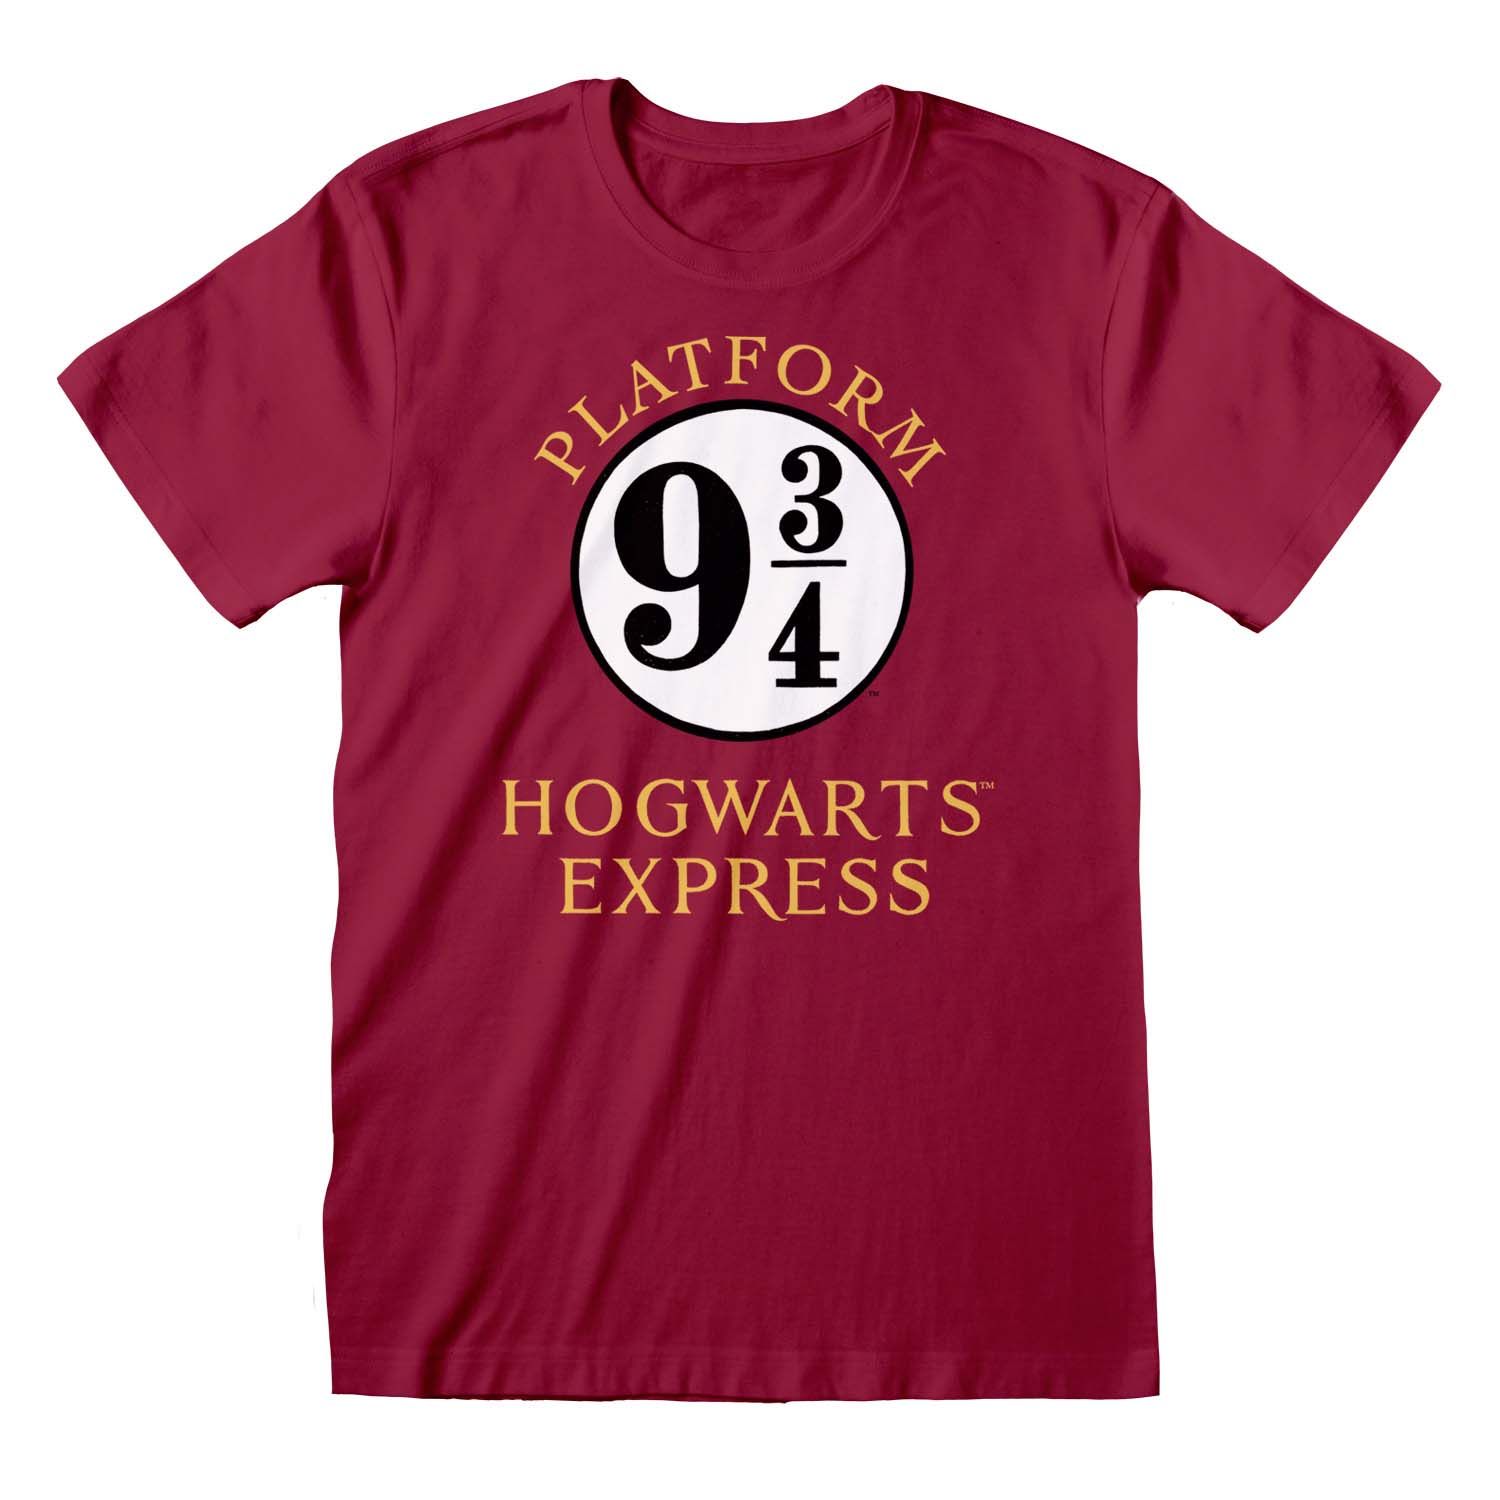 Harry Potter: Platform 3/4 Express - Merchoid 9 Hogwarts T-Shirt